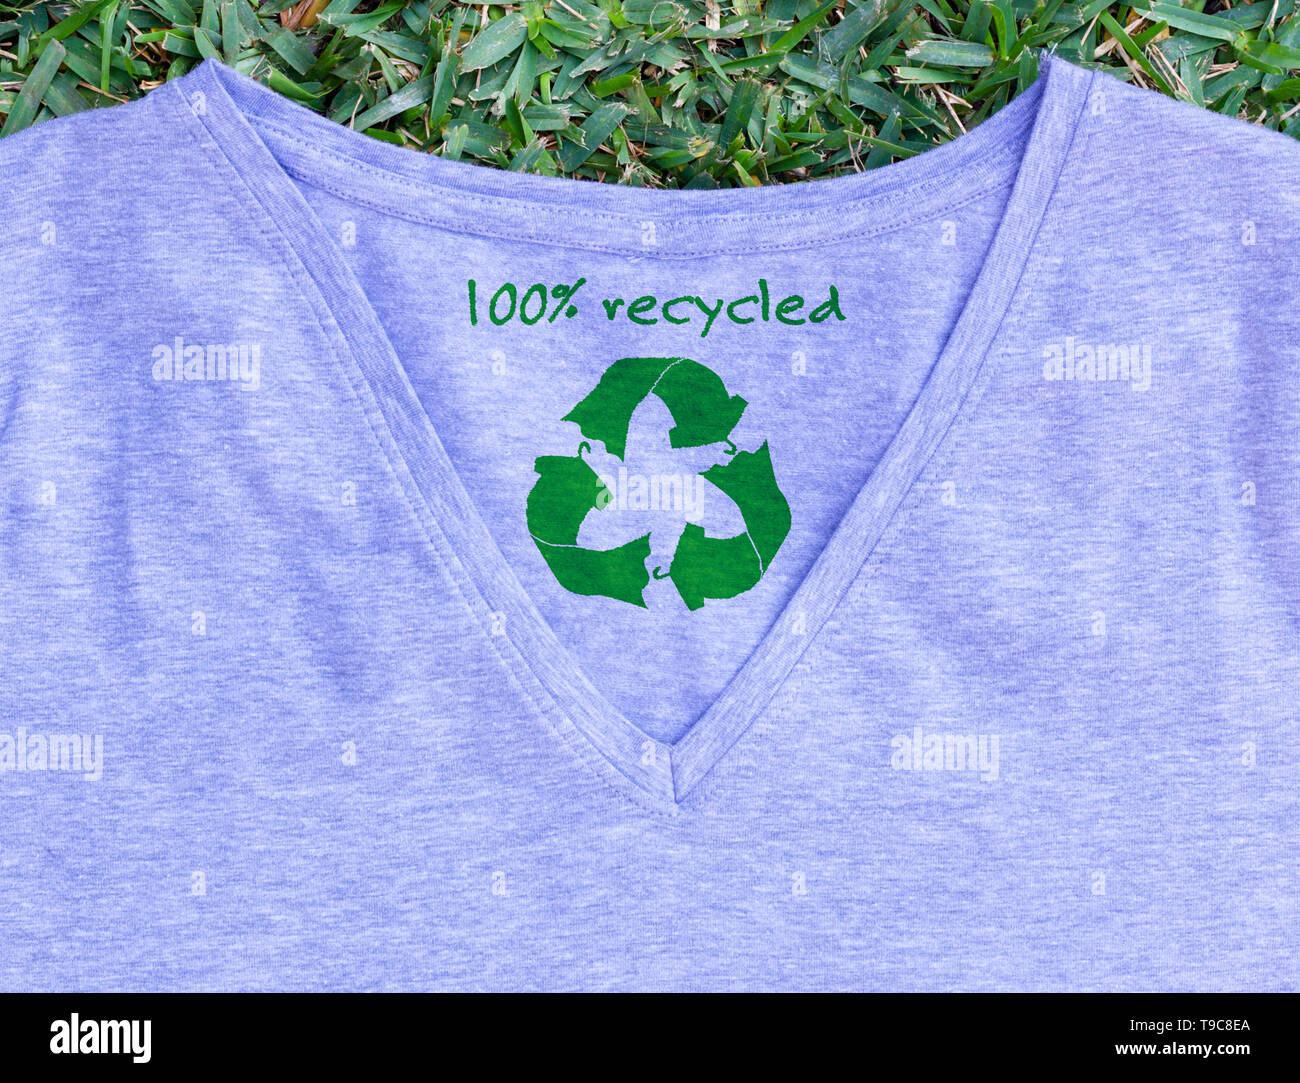 Riciclare i vestiti icona sul t shirt con 100% riciclato testo, concetto illustrazione riutilizzare e riciclare abiti e prodotti tessili per ridurre i rifiuti Foto Stock